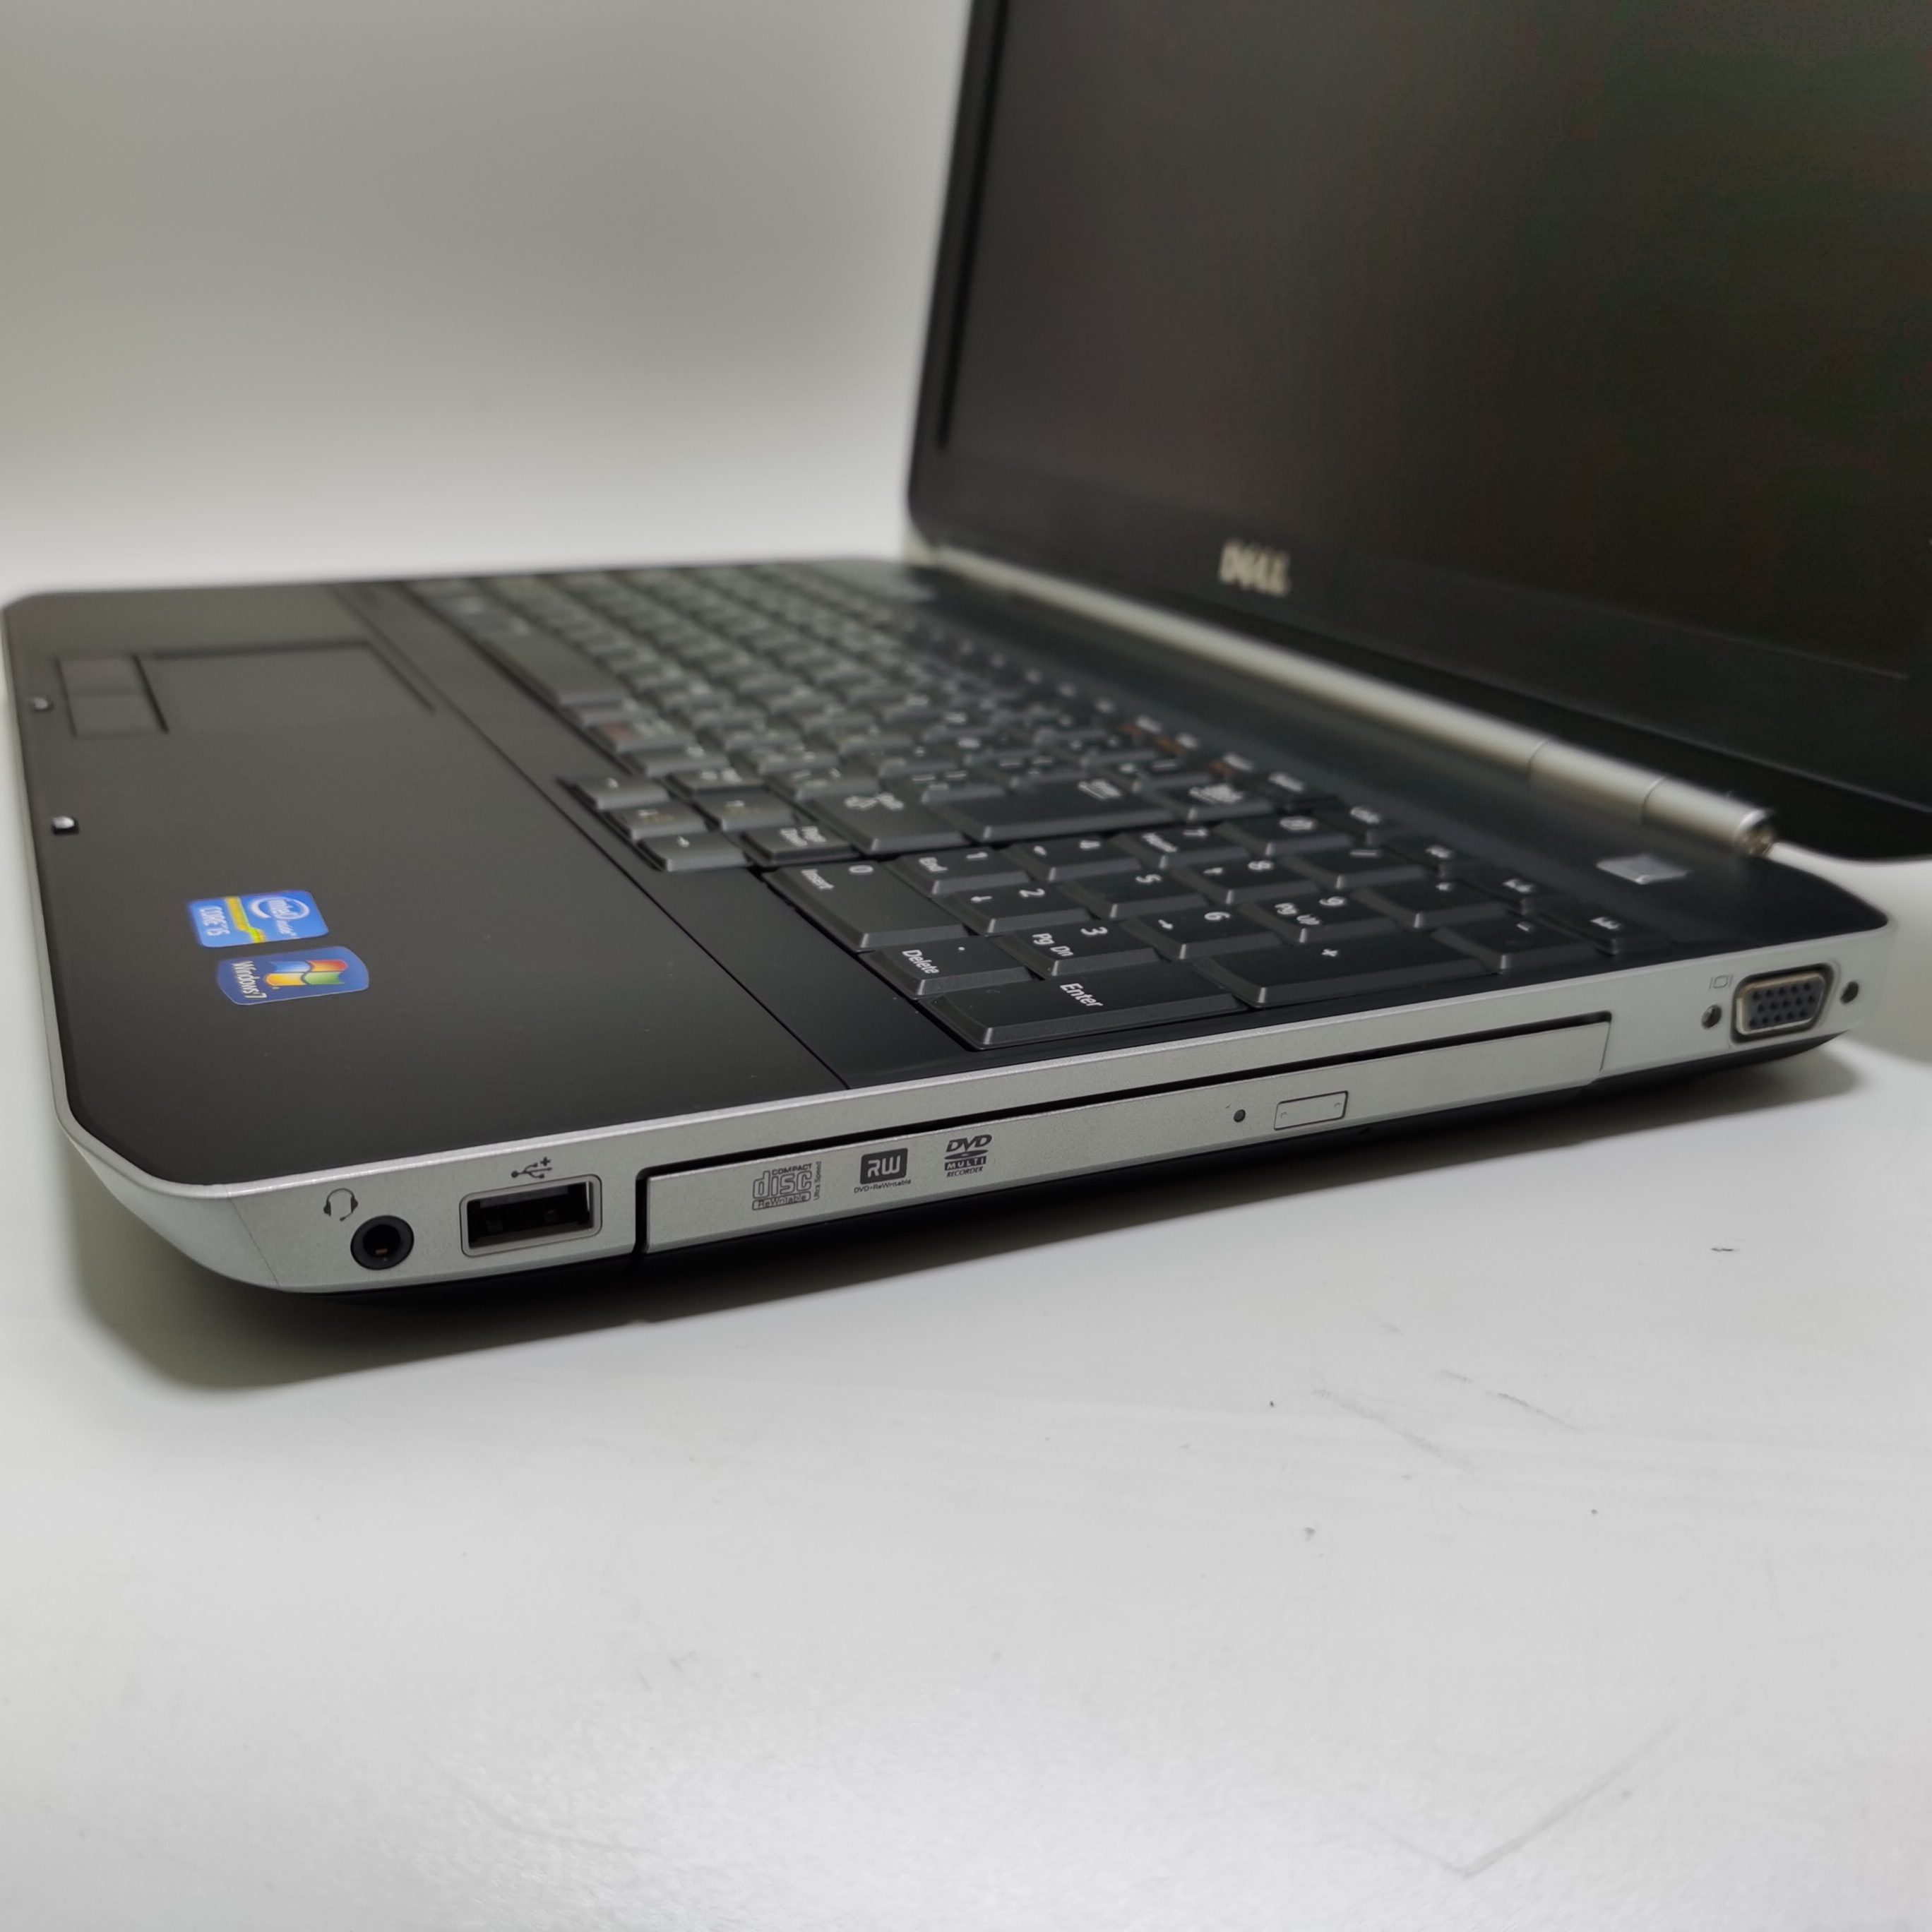 ภาพอธิบายเพิ่มเติมของ โน๊ตบุ๊ค notebook Dell E5530 i5 gen3 15.6 inch  //  Lenovo ThinkPad  M14 โน๊ตบุ๊คมือสอง  โน๊ตบุ๊คถูกๆๆ  คอมพิวเตอร์  คอม  laptop pc